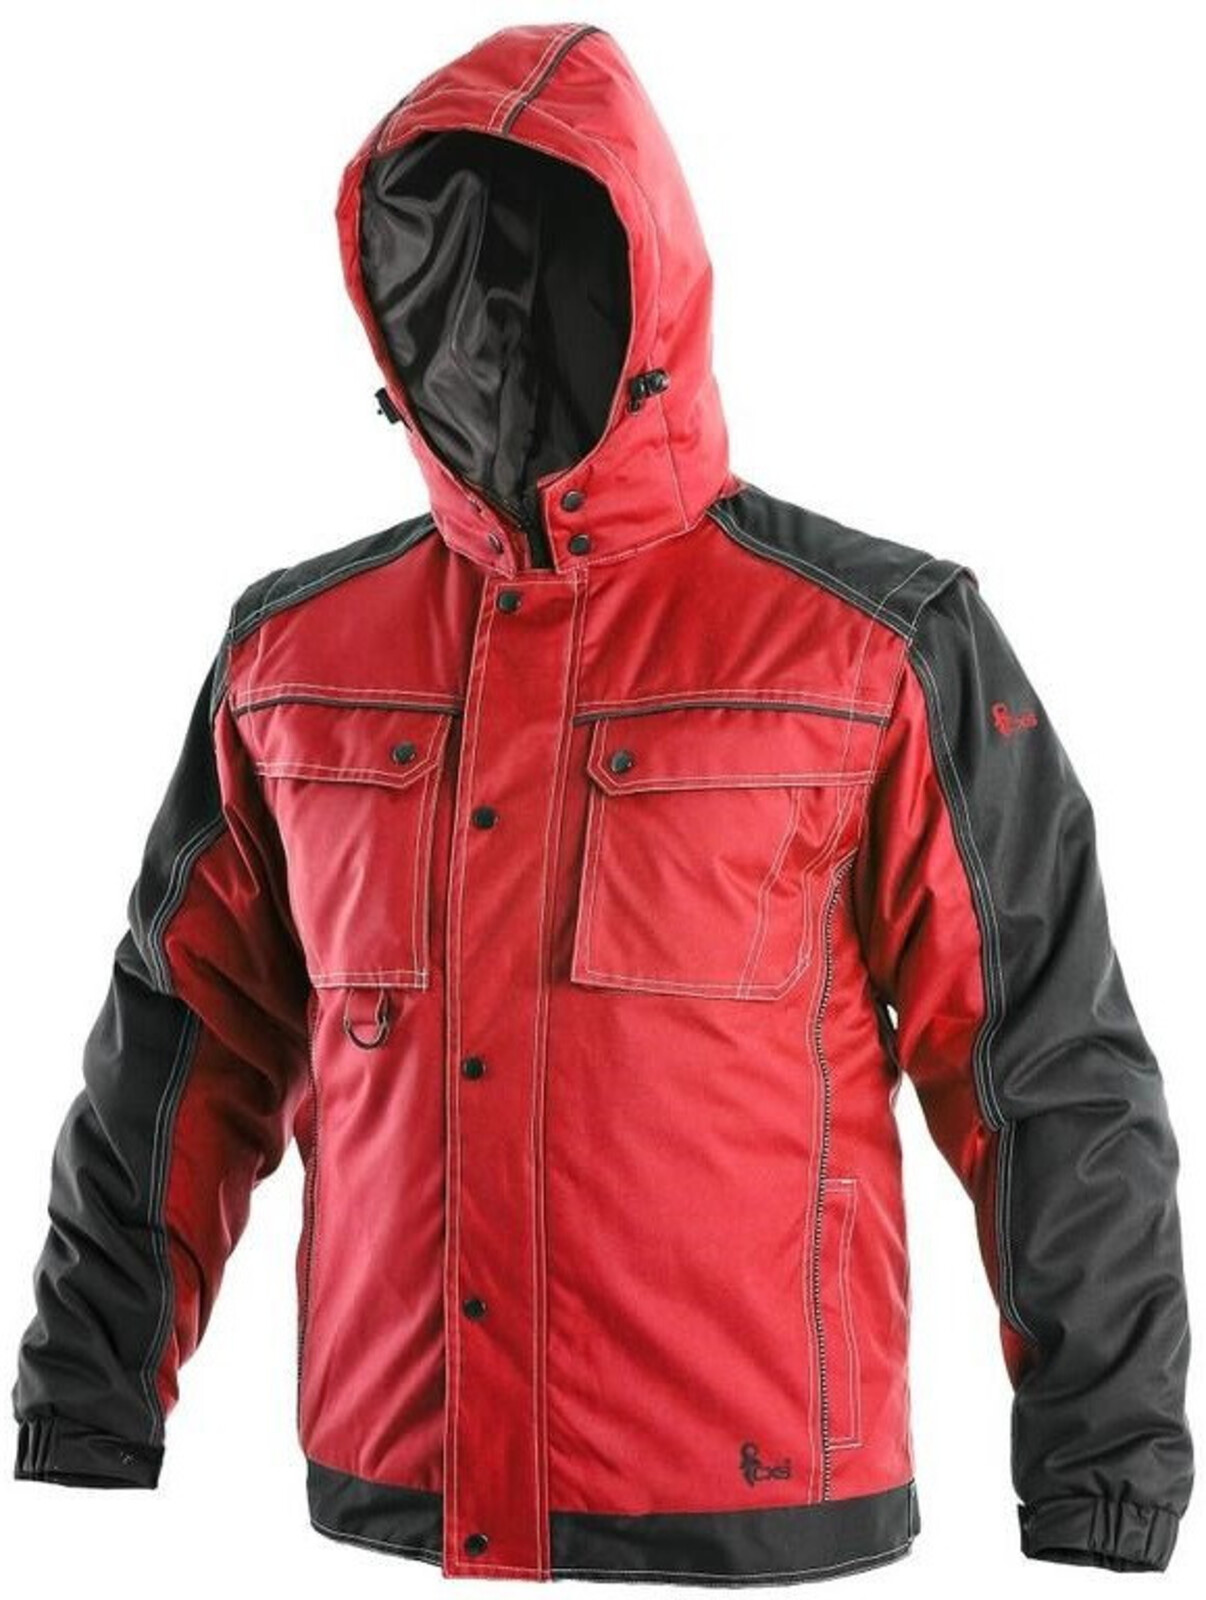 Pánska zimná bunda CXS Irvine 2v1 - veľkosť: S, farba: červená/čierna